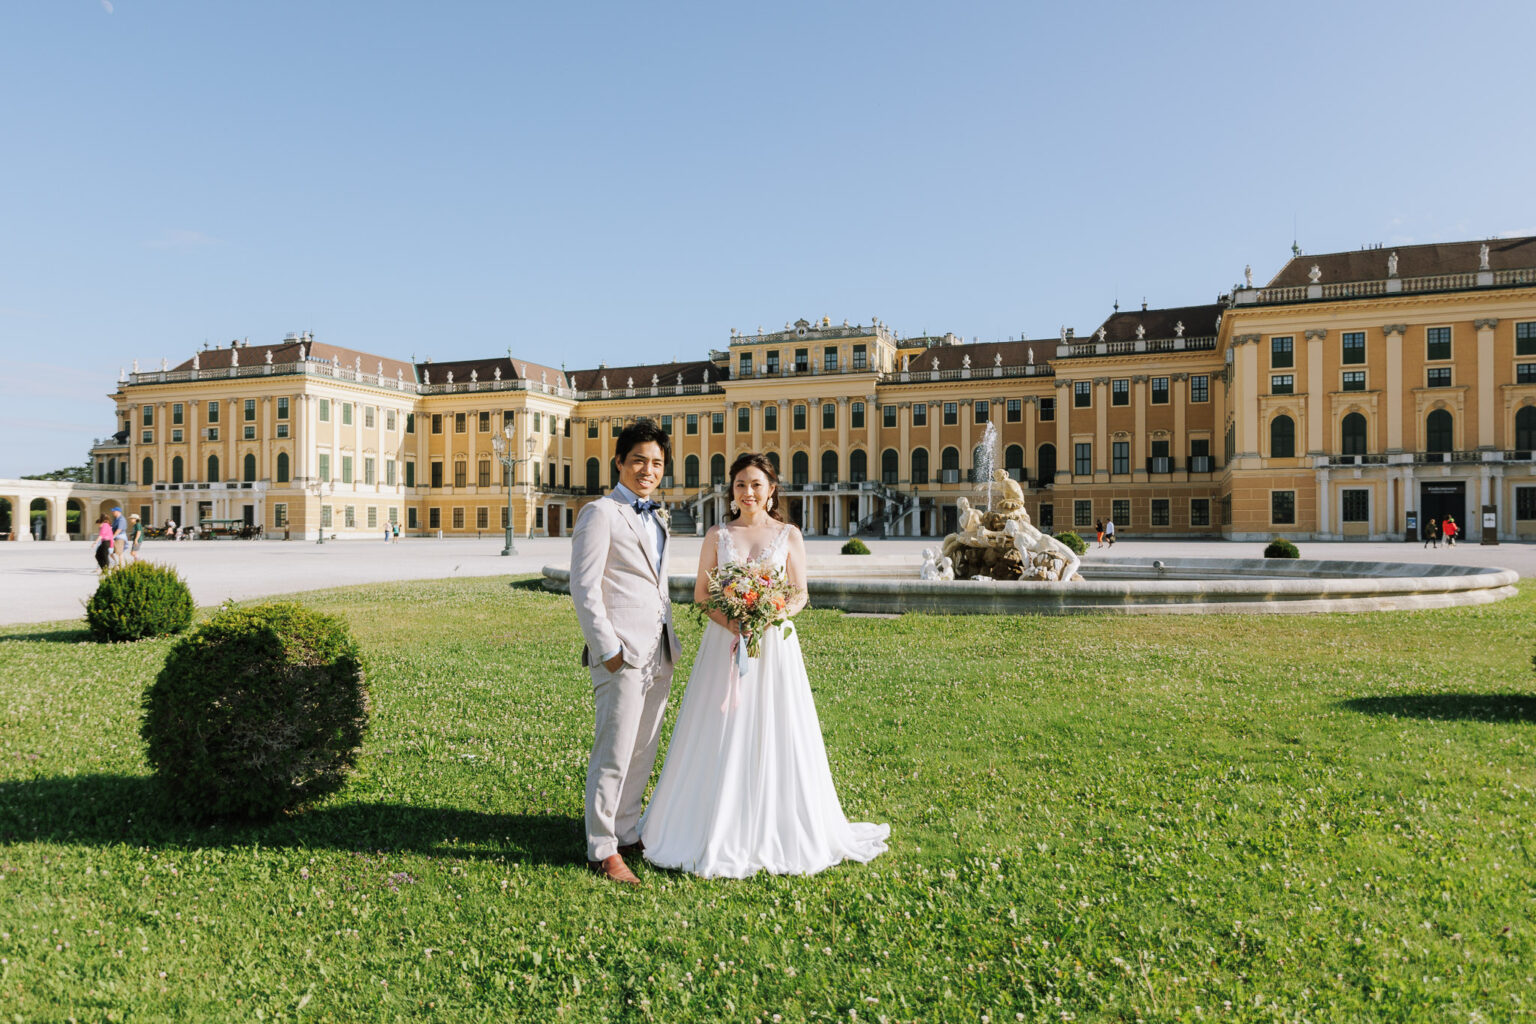 Wedding photo session at Schönbrunn, Vienna